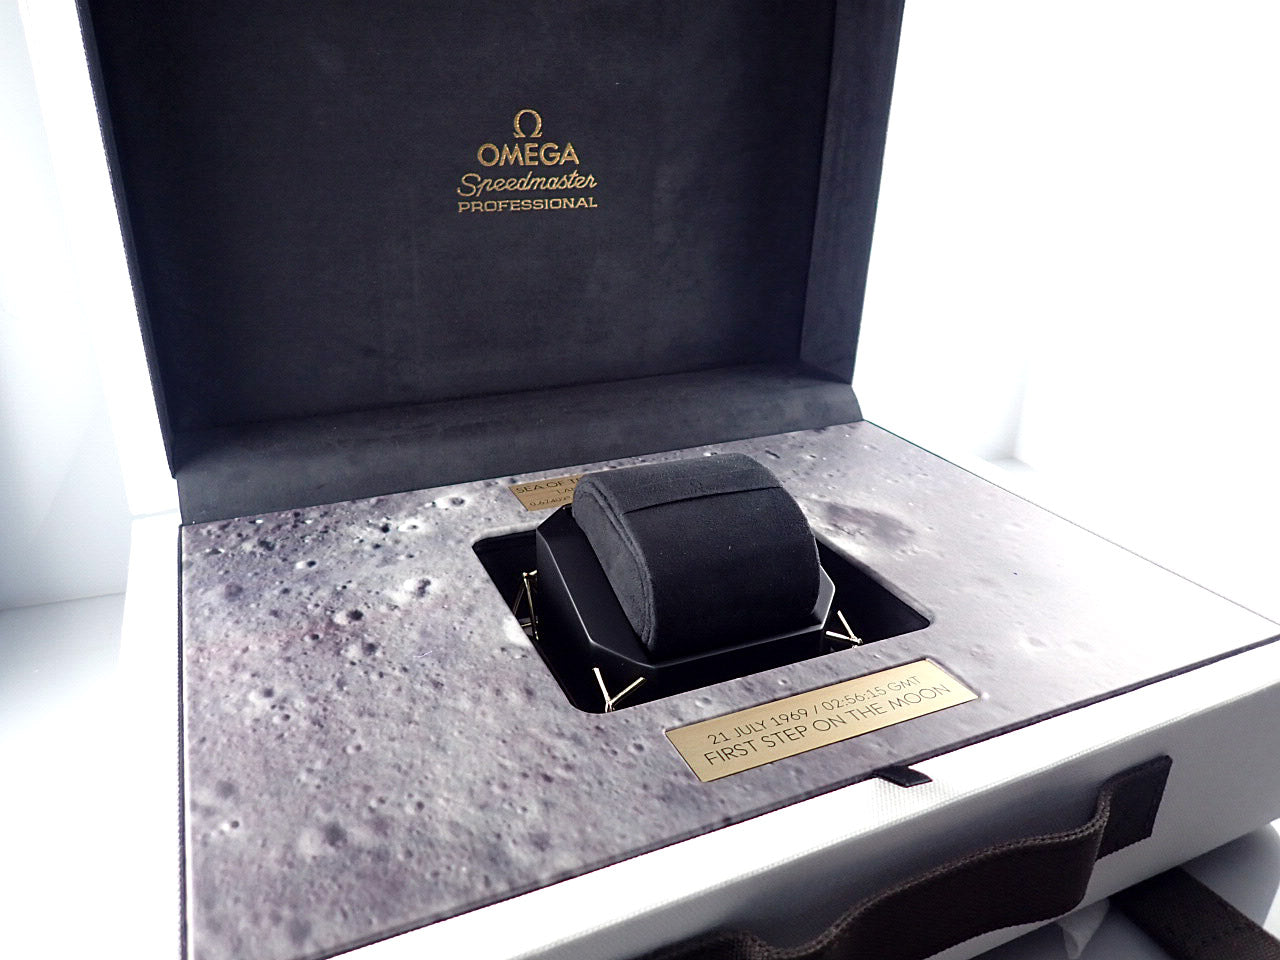 オメガ スピードマスター ムーンウォッチ アポロ11号 50周年記念モデル 世界限定6,969本 ≪保証書・箱・その他≫